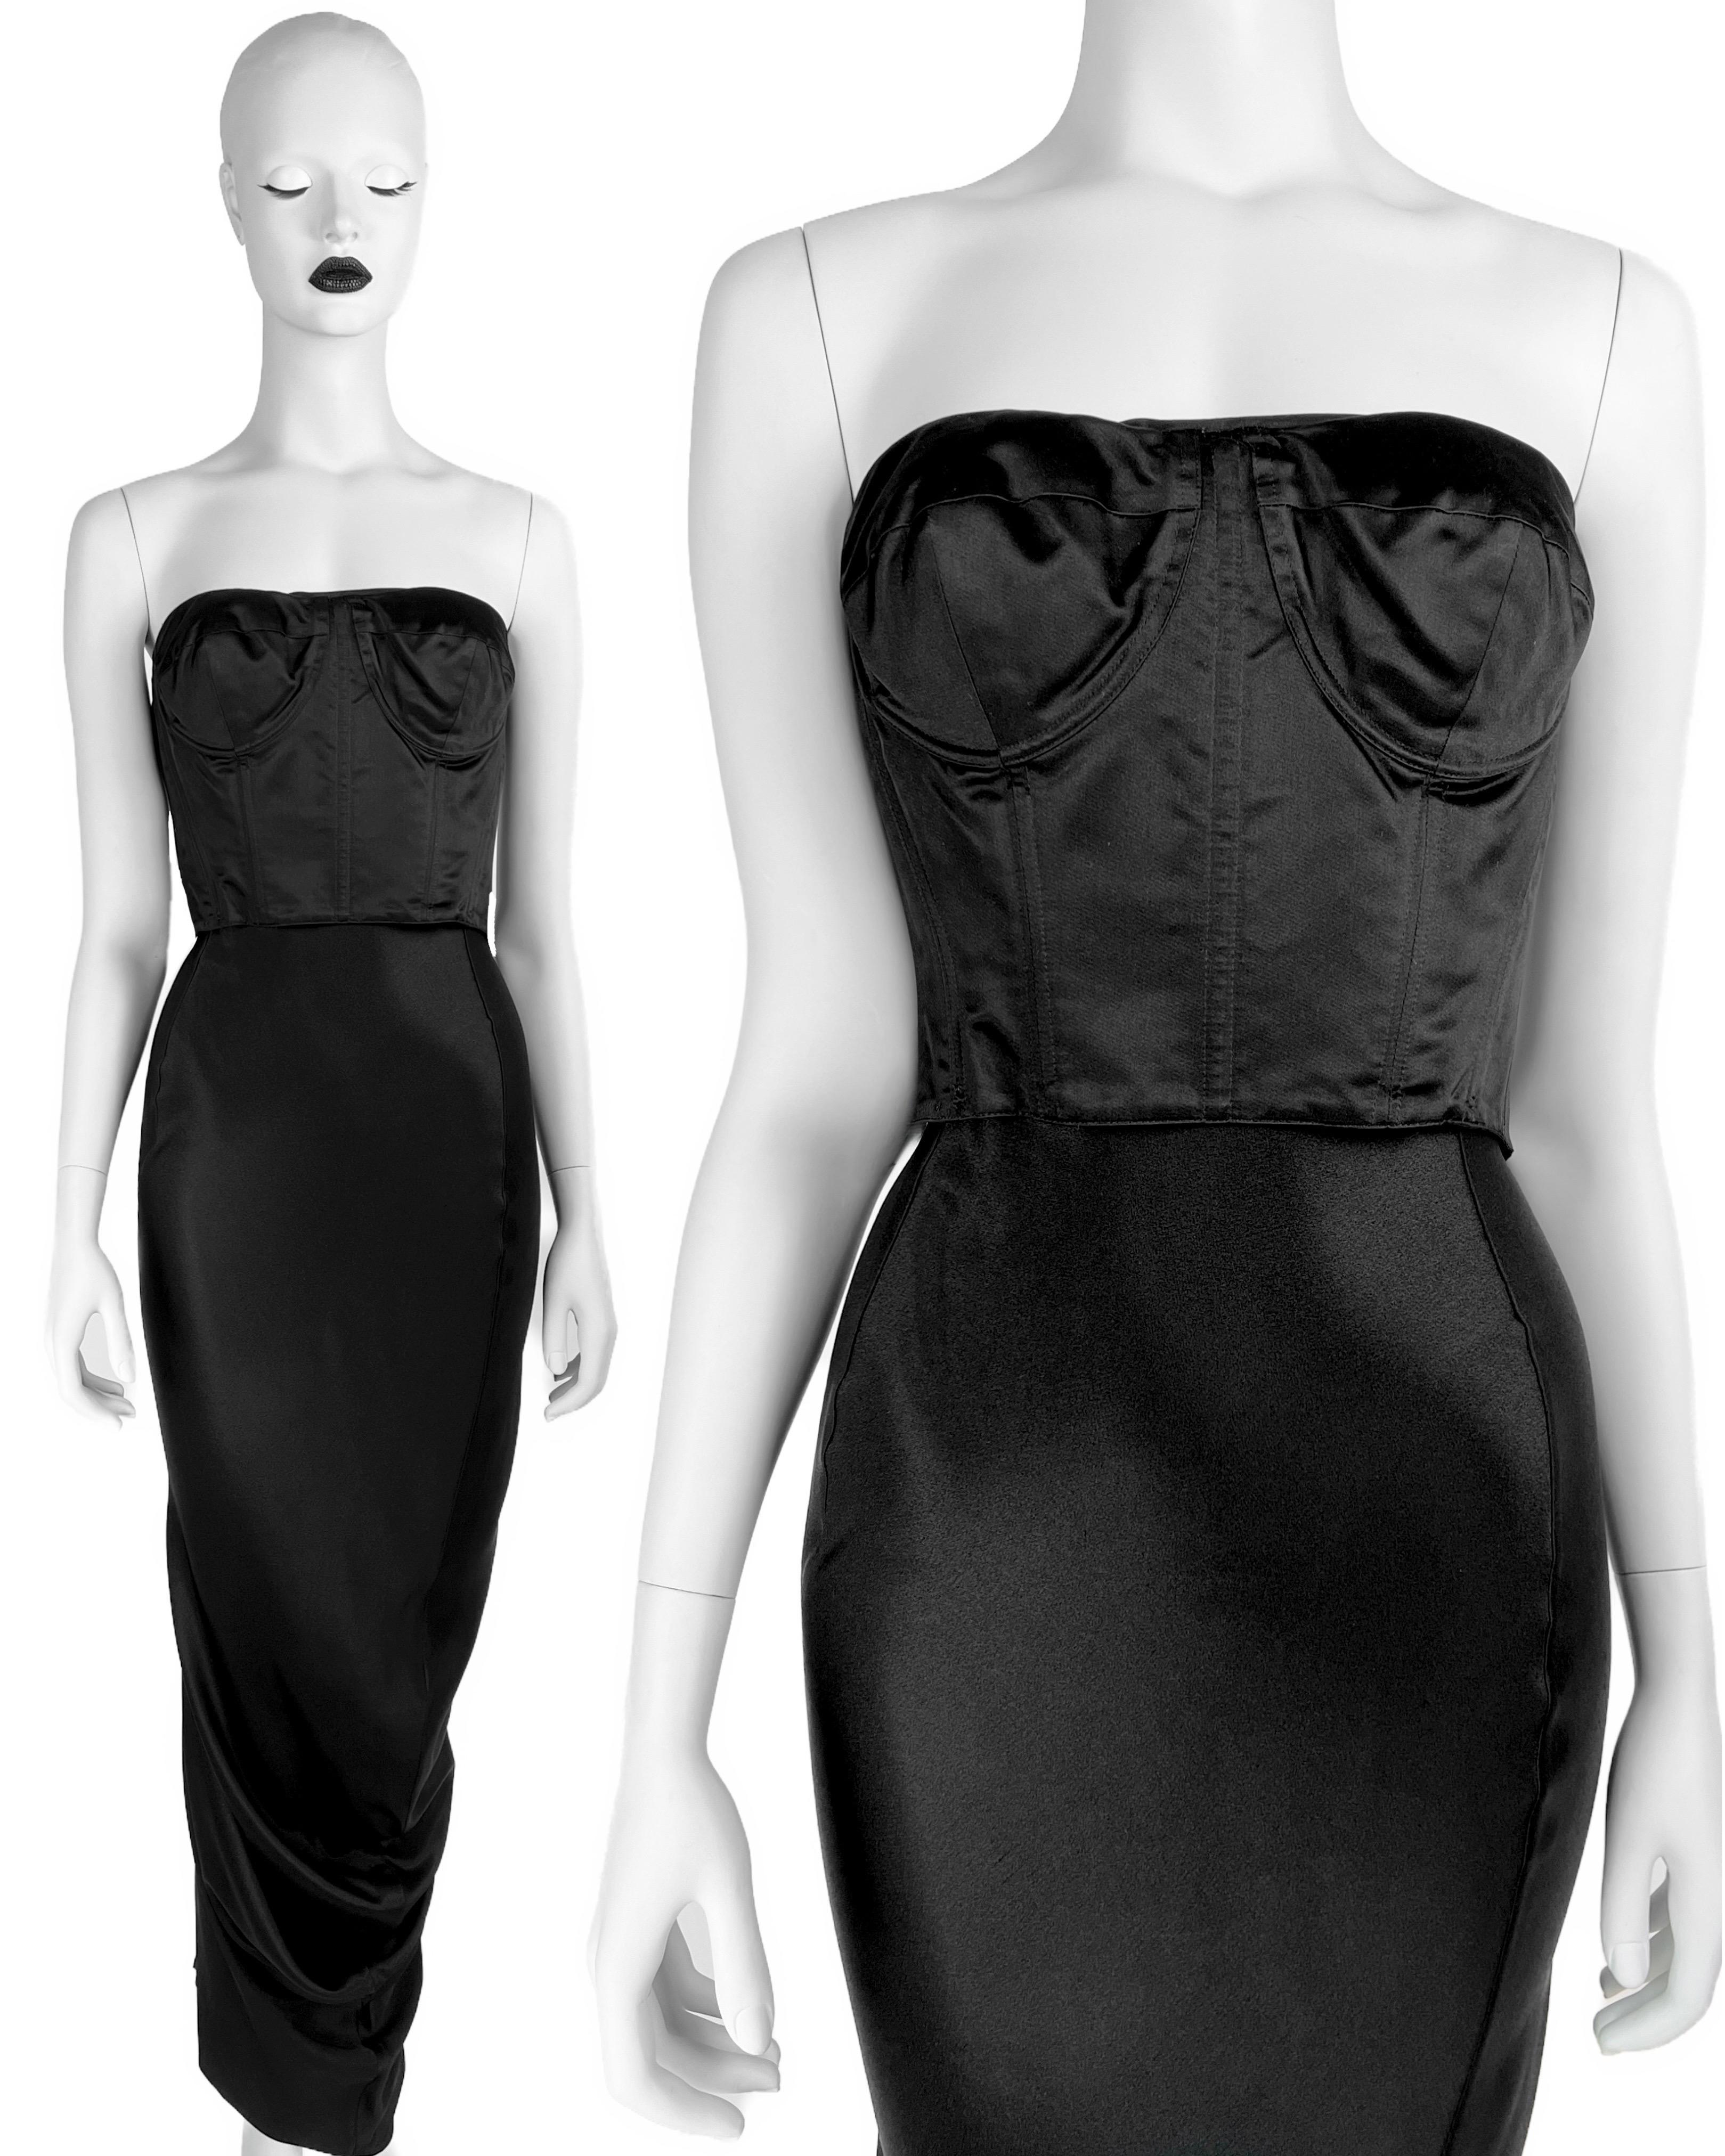 Tel que vu dans un autre tissu sur le défilé, ce superbe échantillon de John Galliano Fall 1995 Corseted Gown en fabuleux noir ! Cette robe peut être portée de DEUX façons : avec un corset tourné vers l'extérieur et vers l'intérieur. Le même style